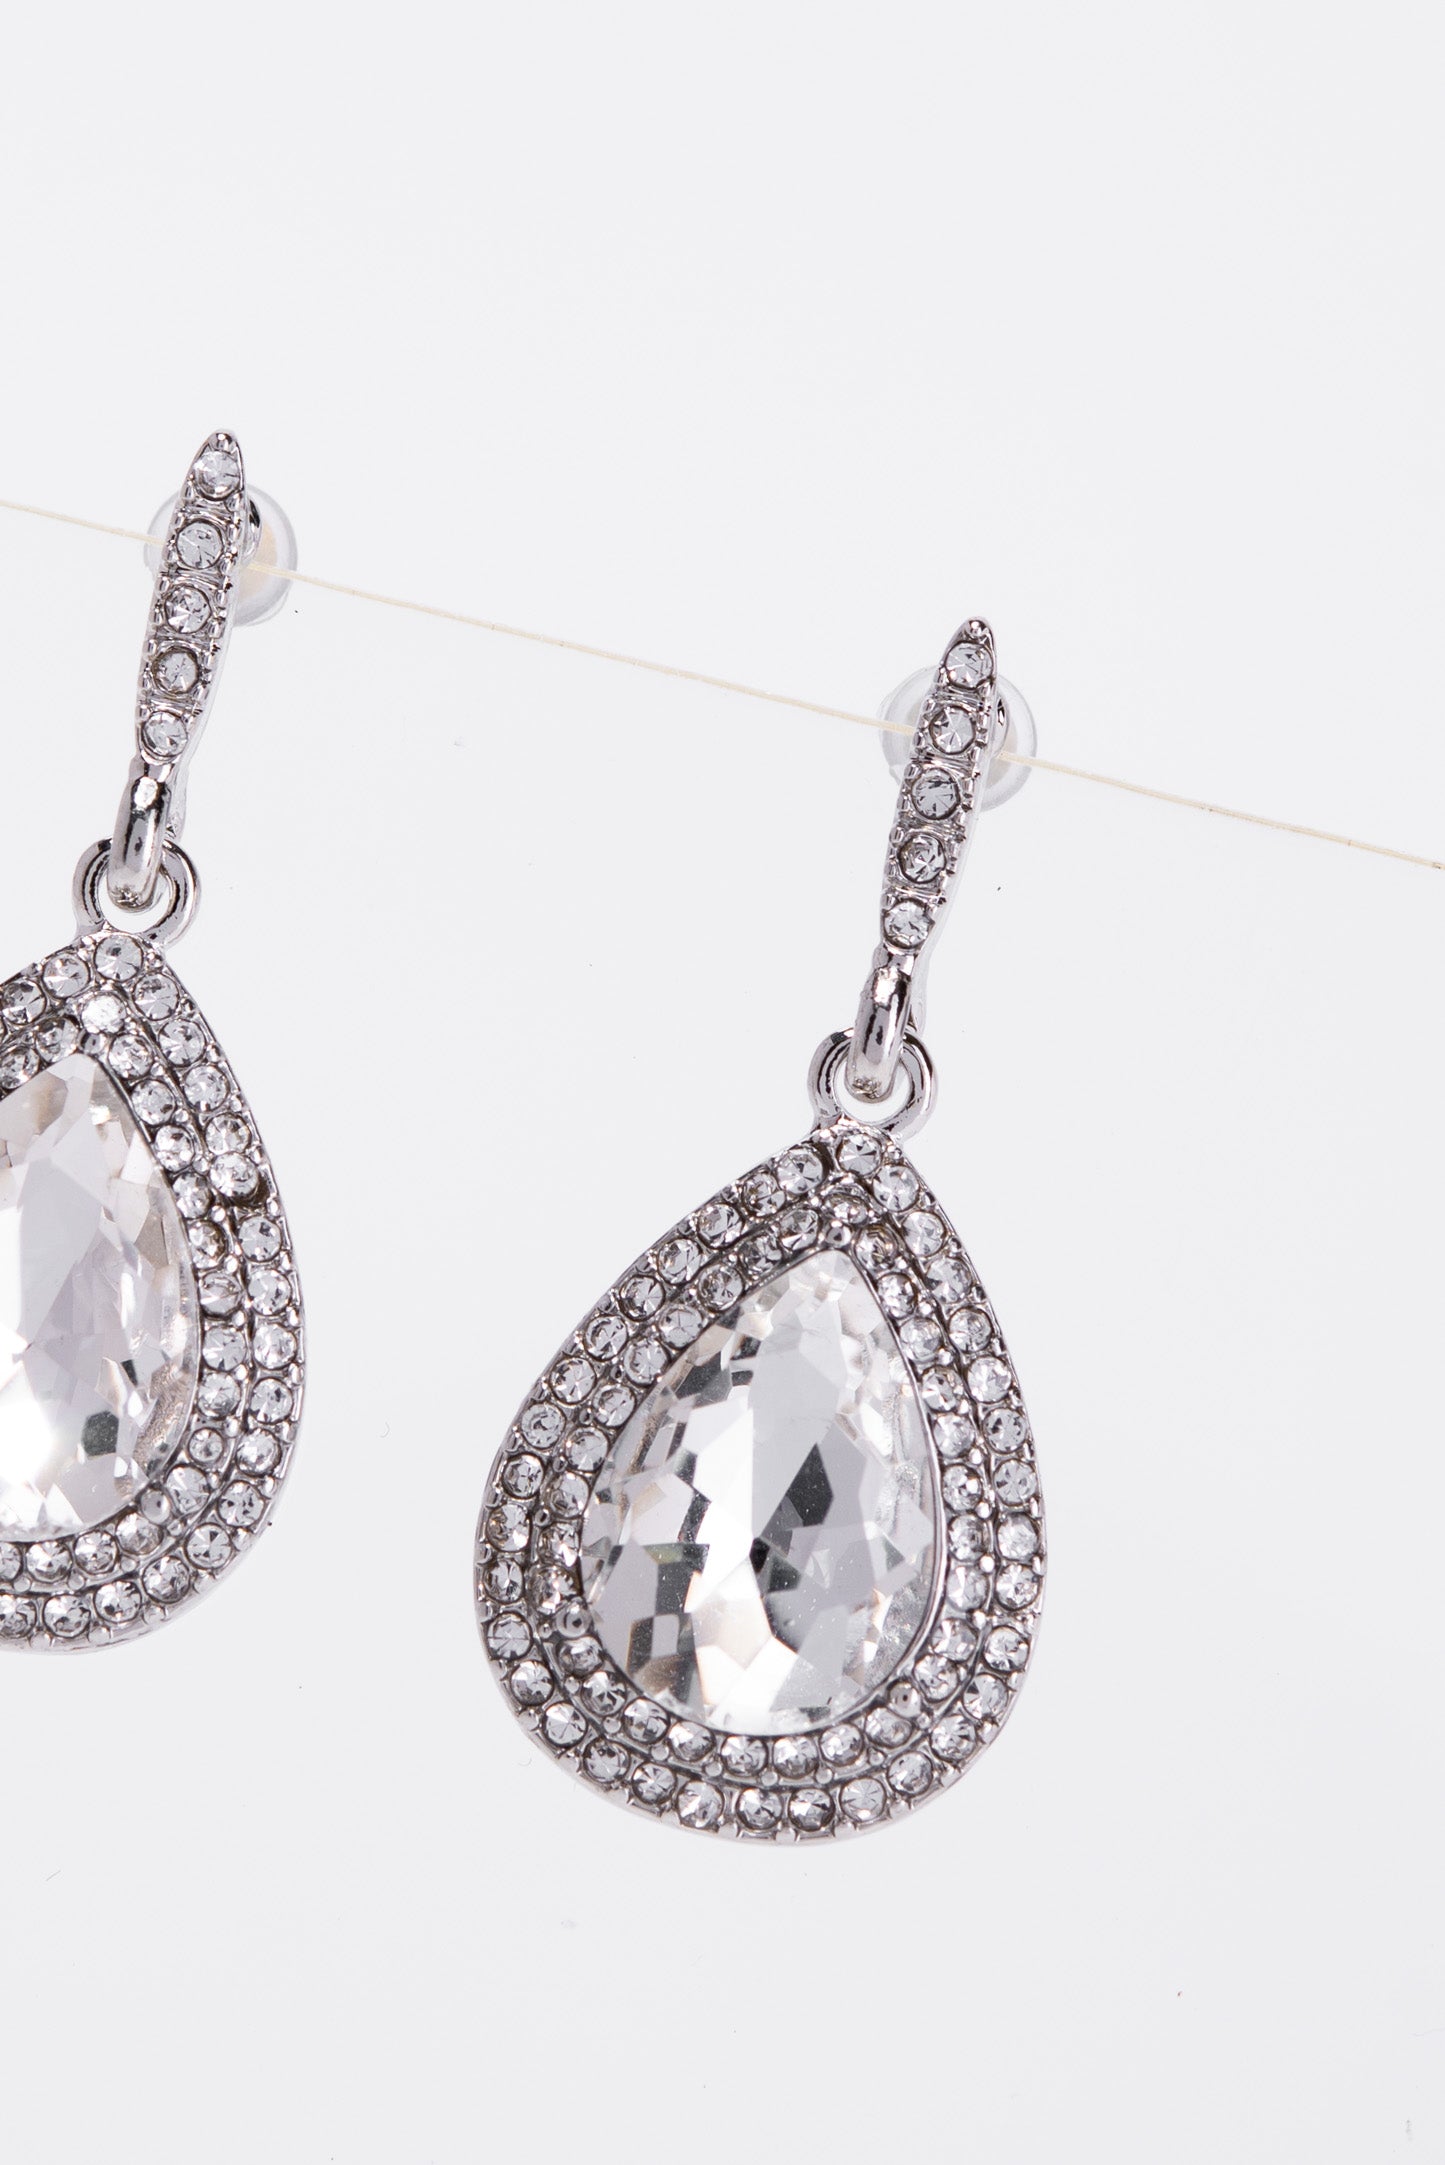 Colette Halo Teardrop Glass Stone Post Earrings